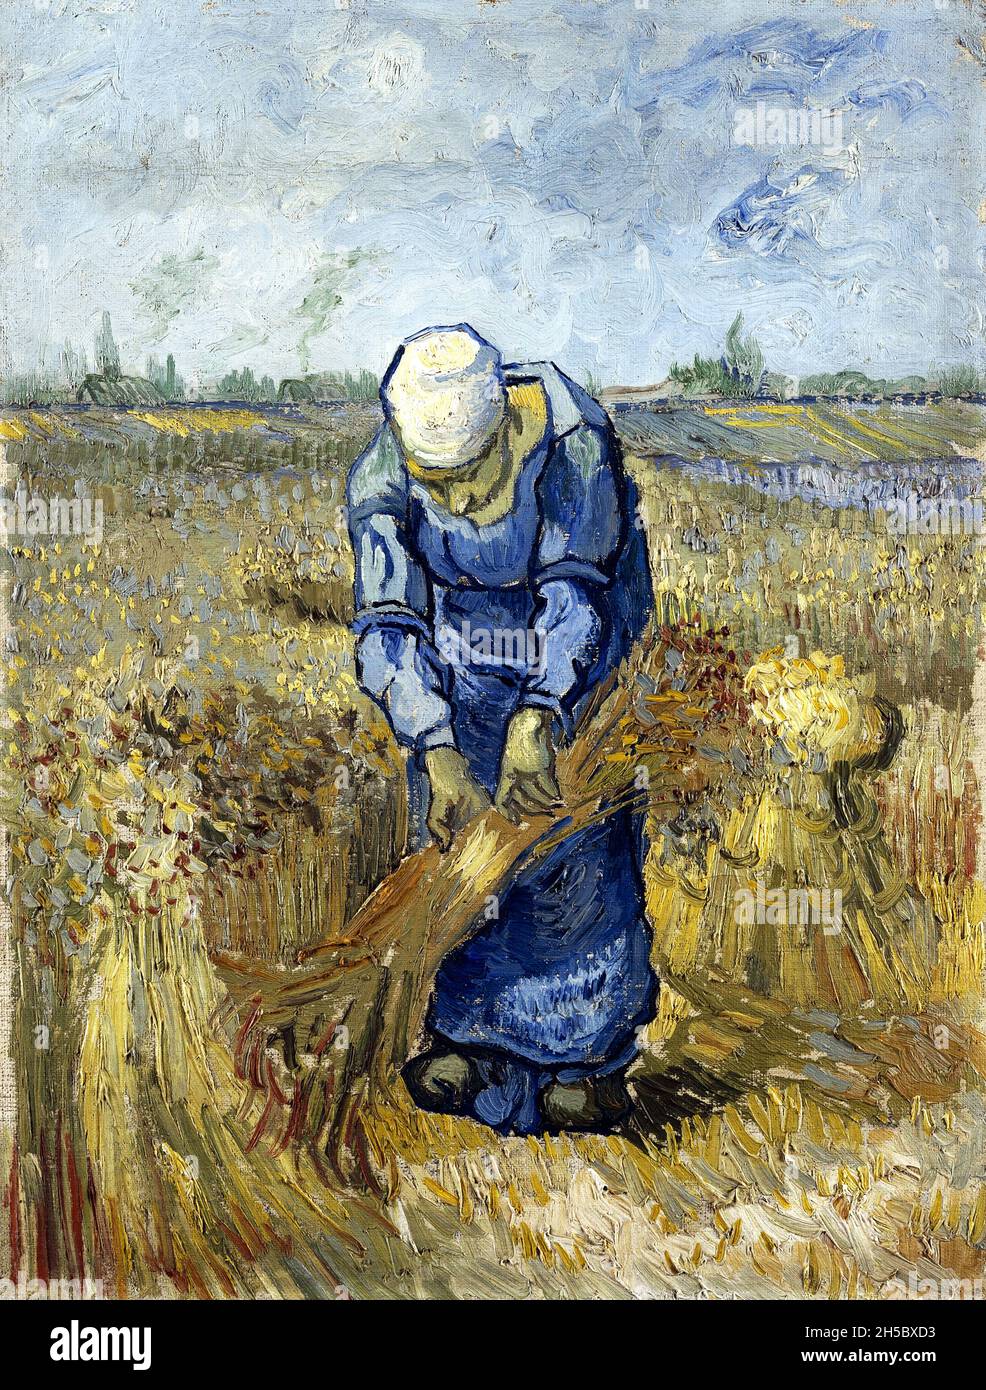 Femme paysanne se liant aux bergerie (après millet) par Vincent van Gogh (1853-1890), 1889 Banque D'Images